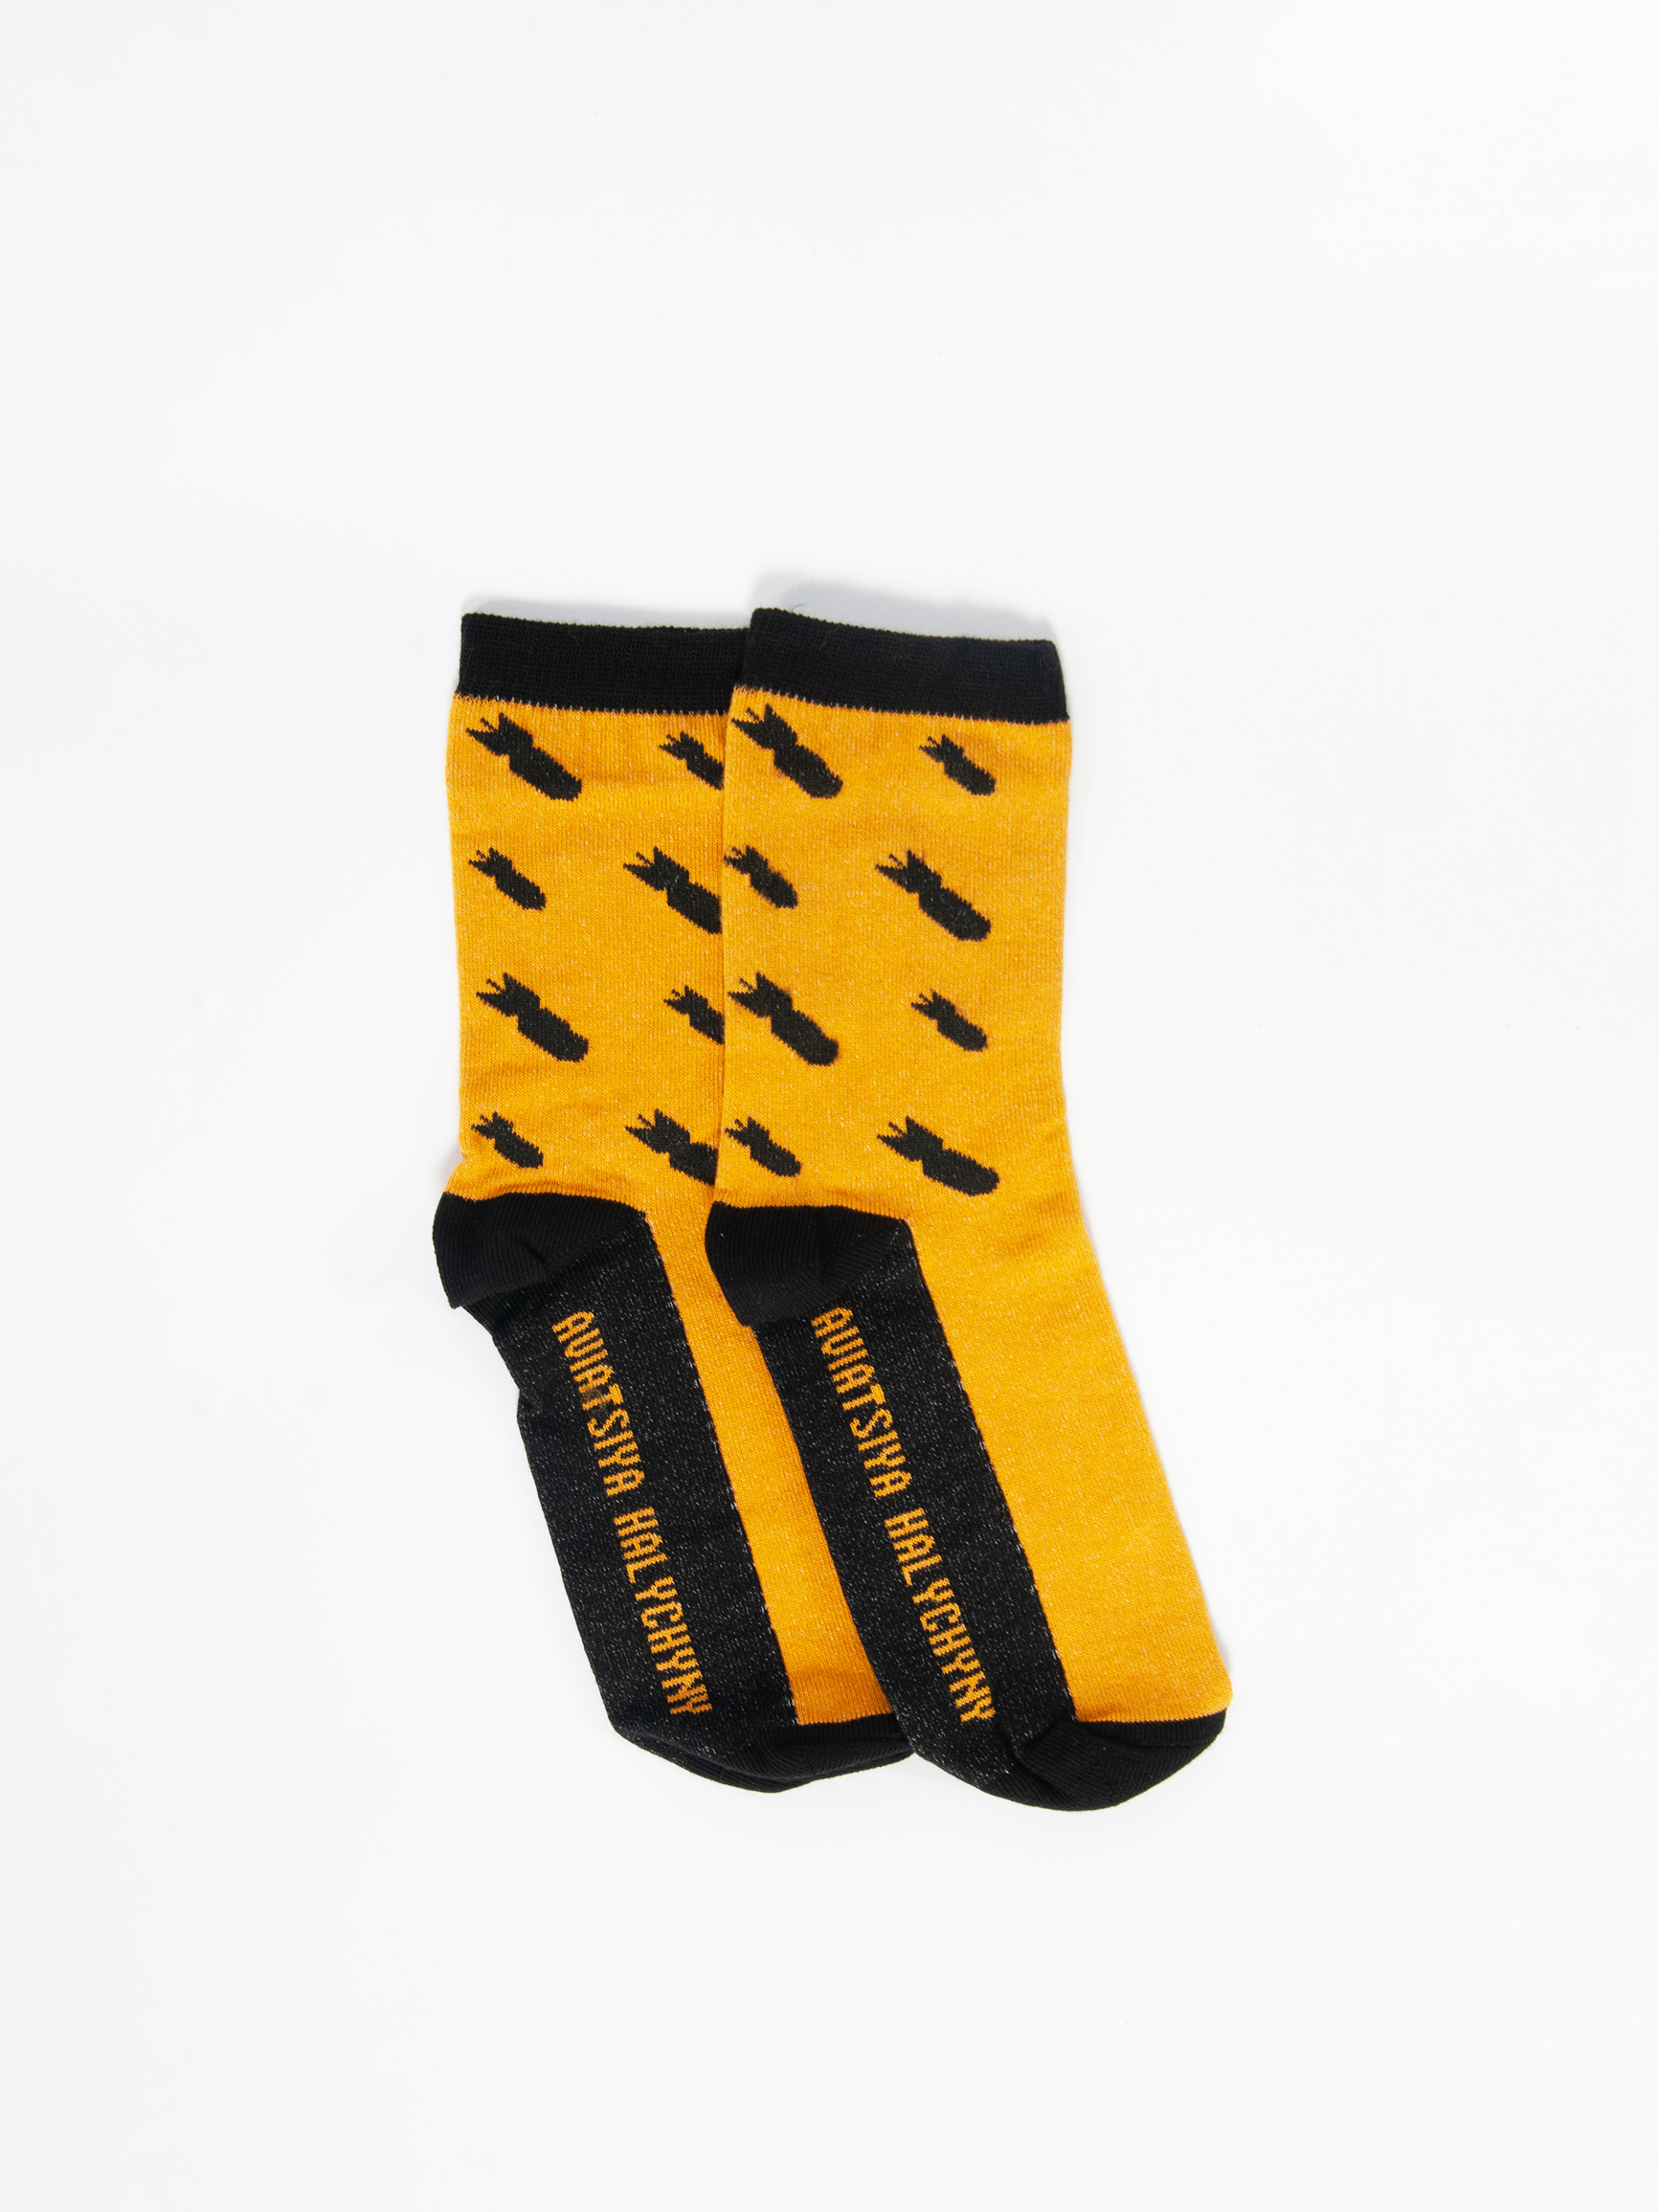 Шкарпетки Бомби. Колір жовтий. 2.